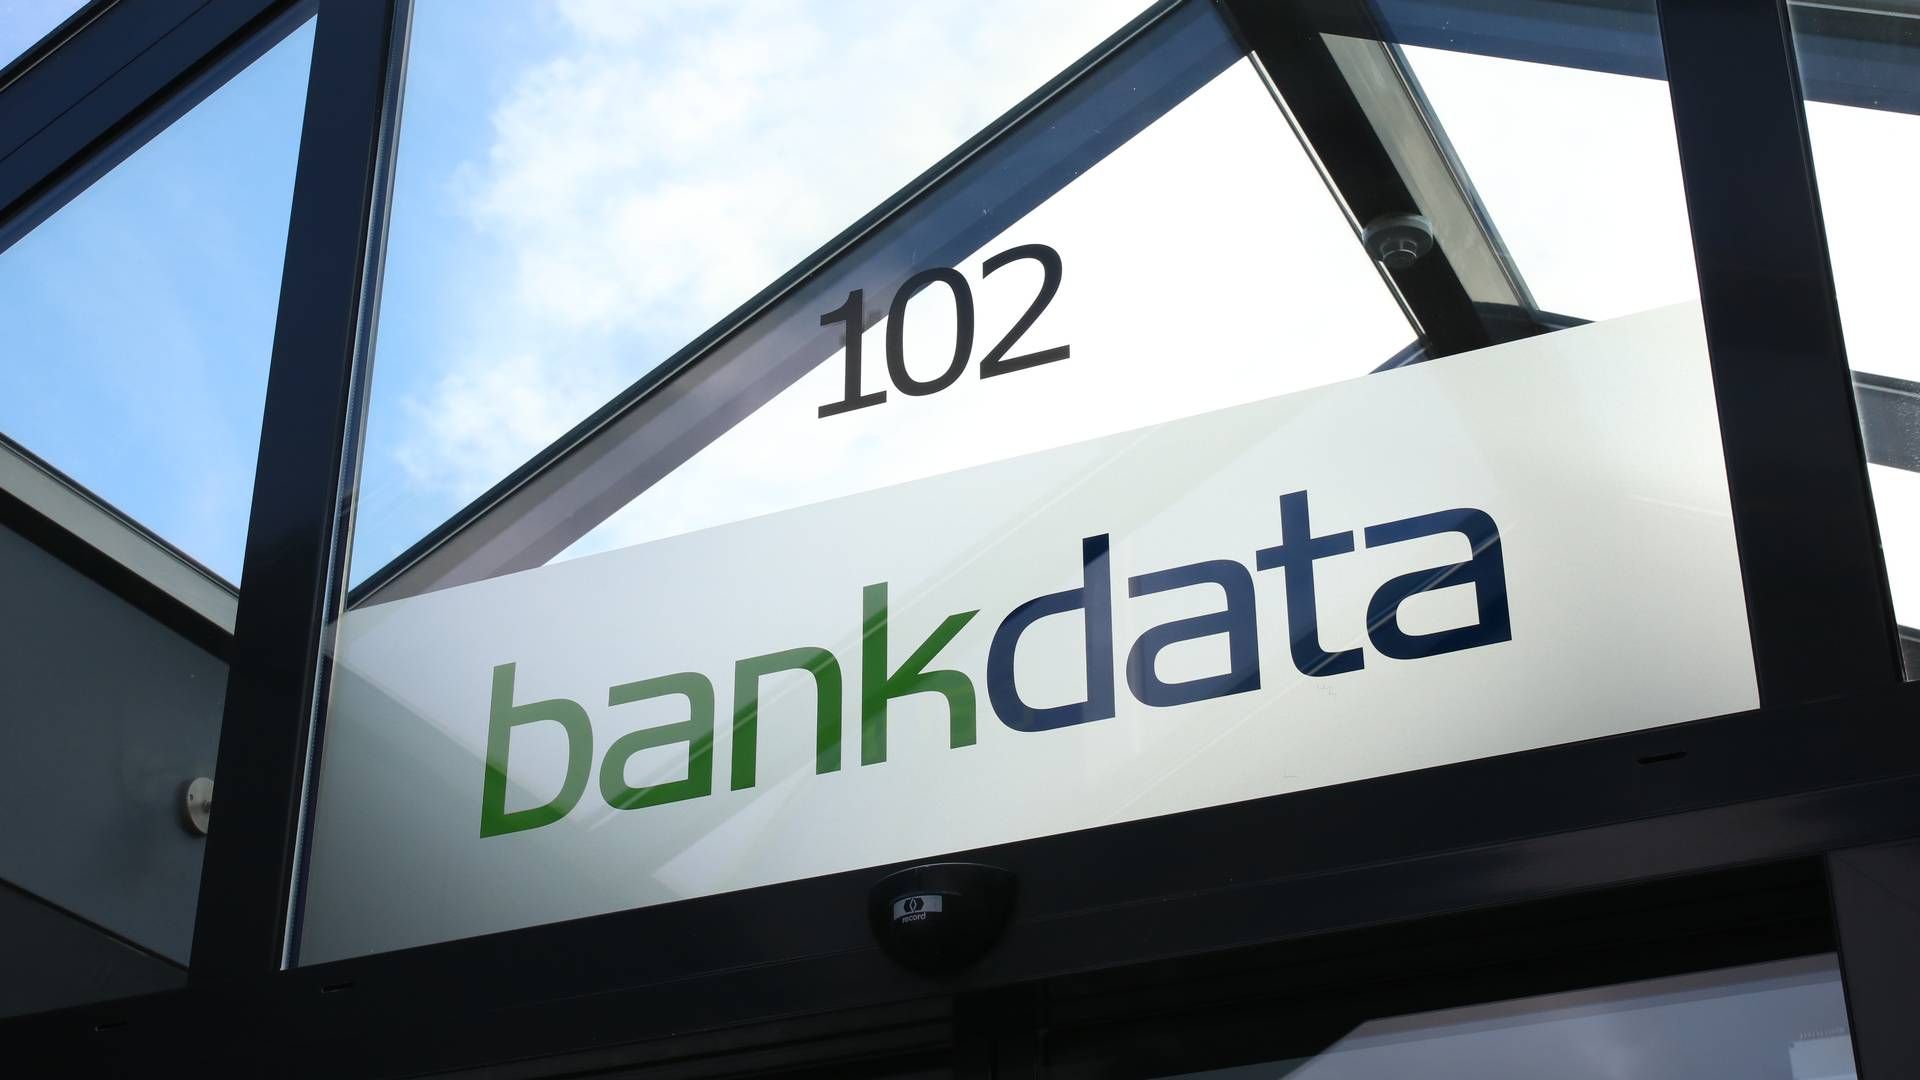 Bankdata er den ene af tre datacentraler på markedet. De to andre er BEC og SDC. | Foto: bankdata